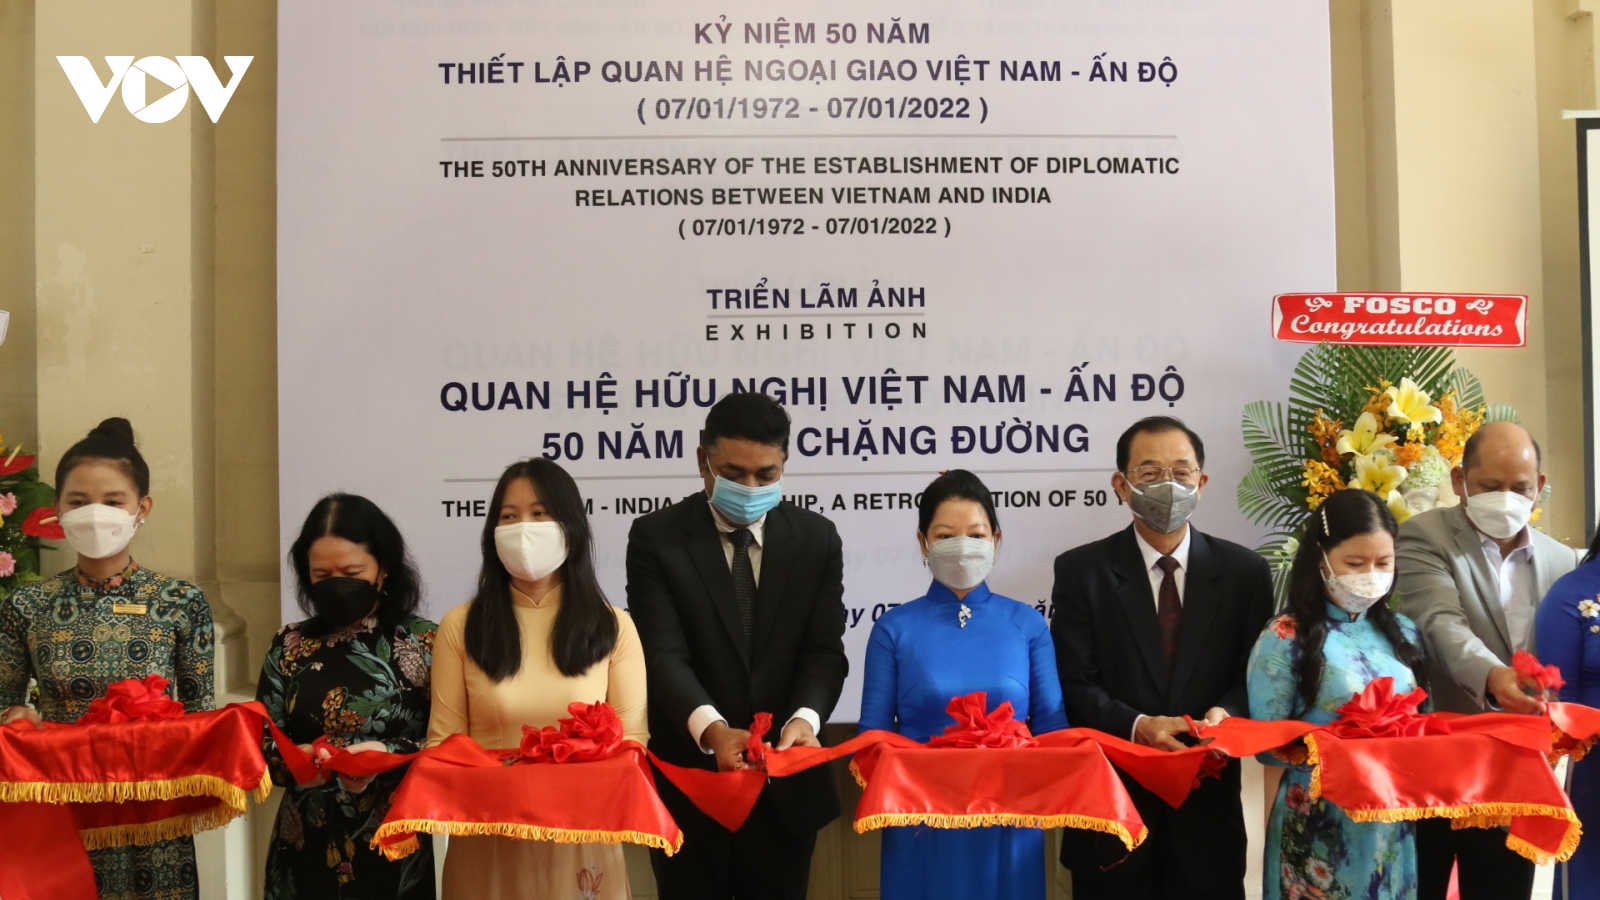 Khai mạc triển lãm ảnh nhân kỷ niệm 50 năm thiết lập quan hệ ngoại giao Việt Nam-Ấn Độ